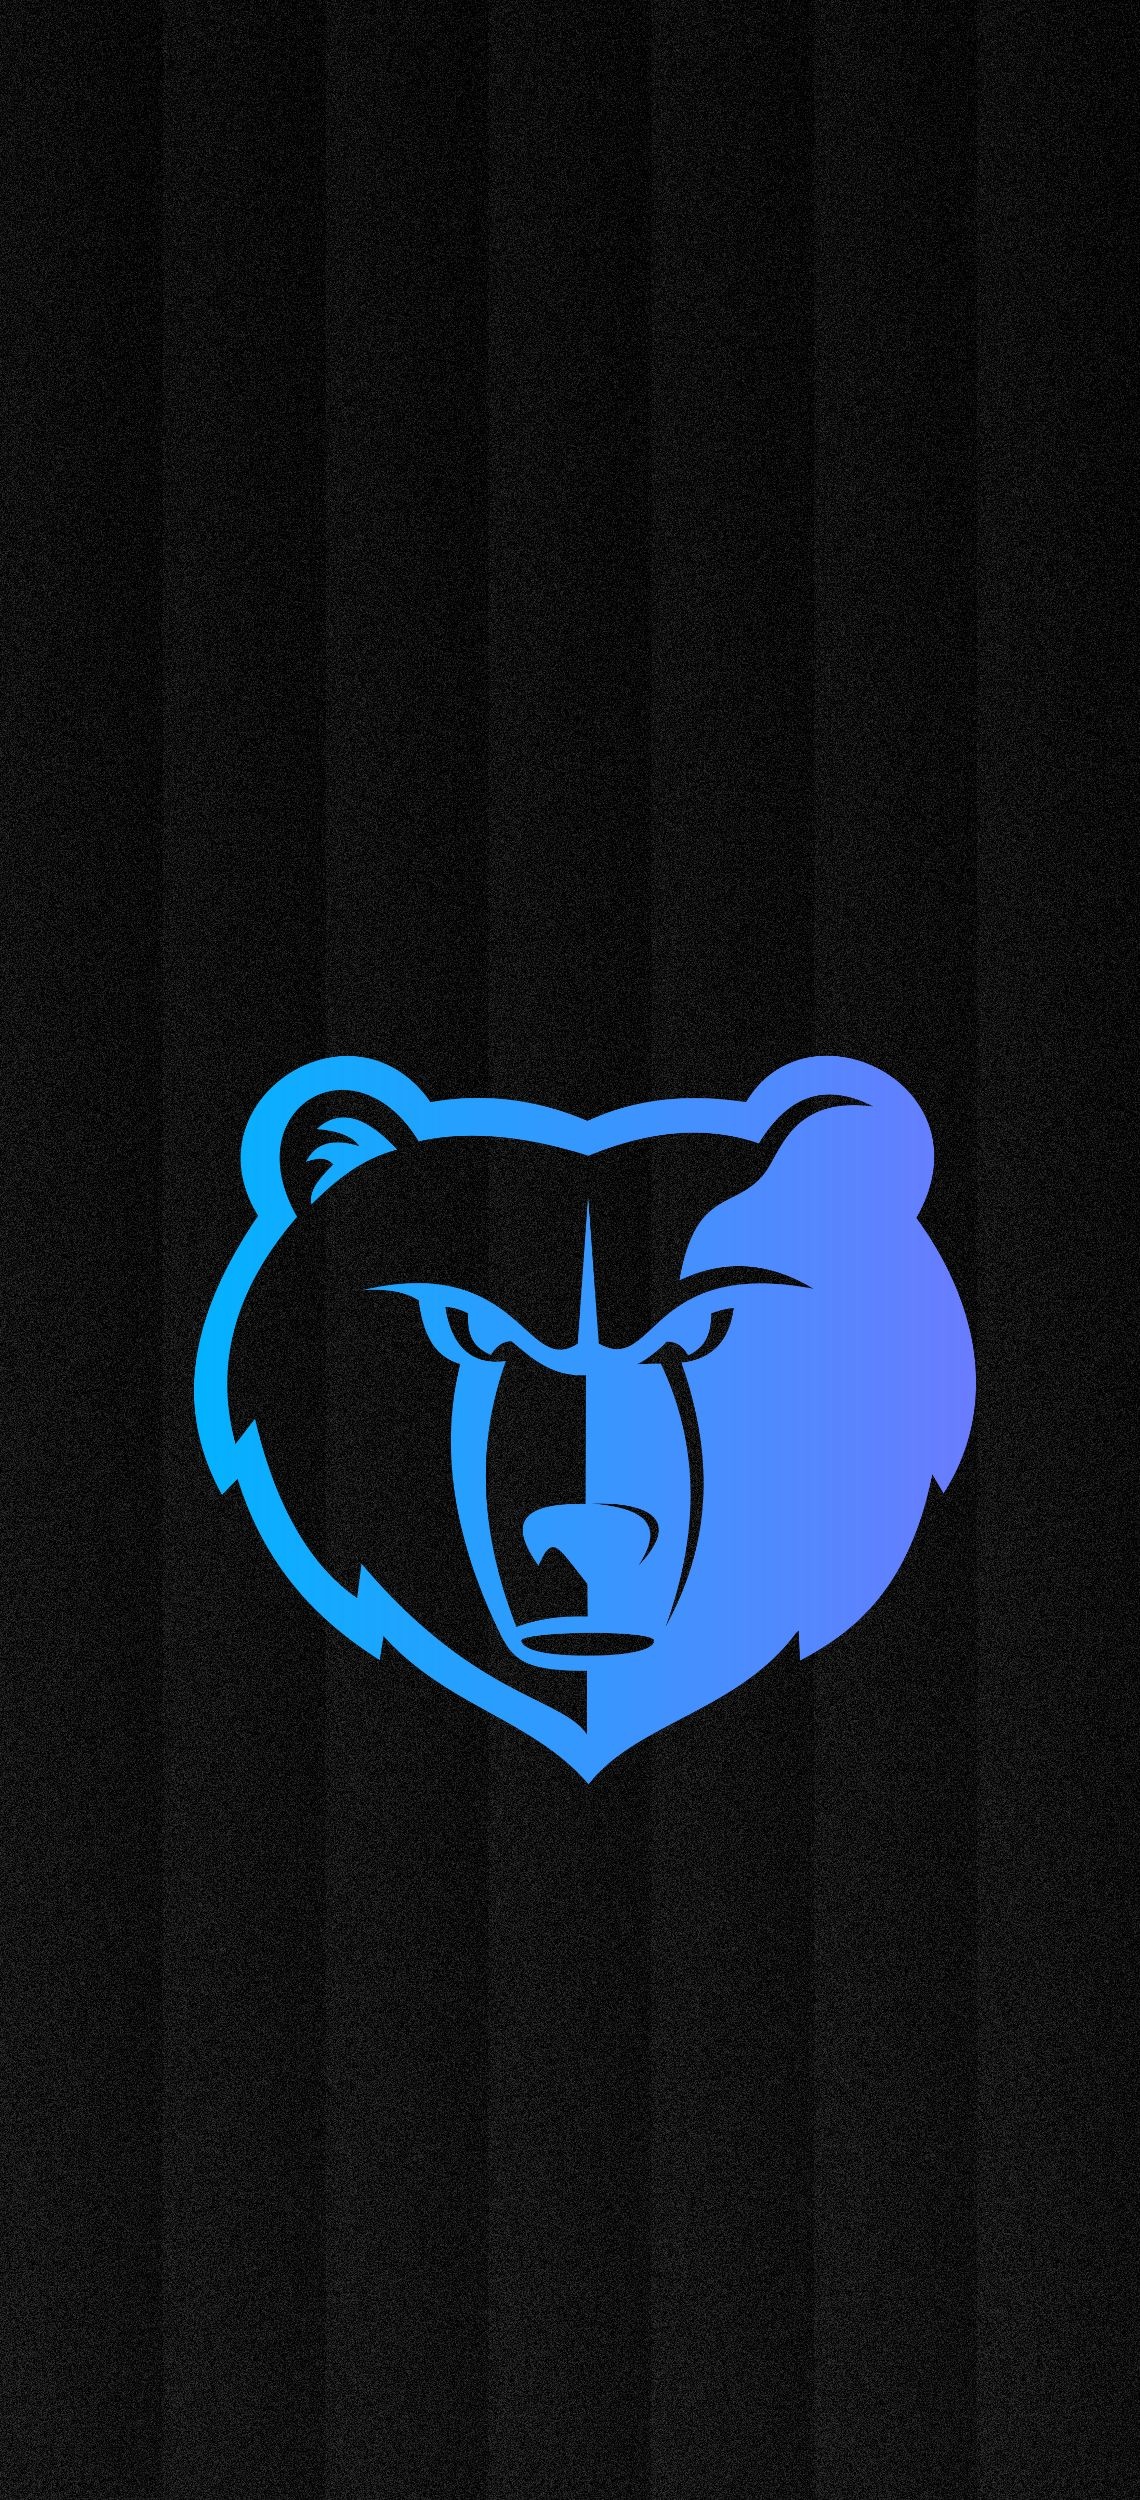 Memphis Grizzlies, Logo wallpapers, Desktop backgrounds, Grizzlies branding, 1140x2500 HD Phone